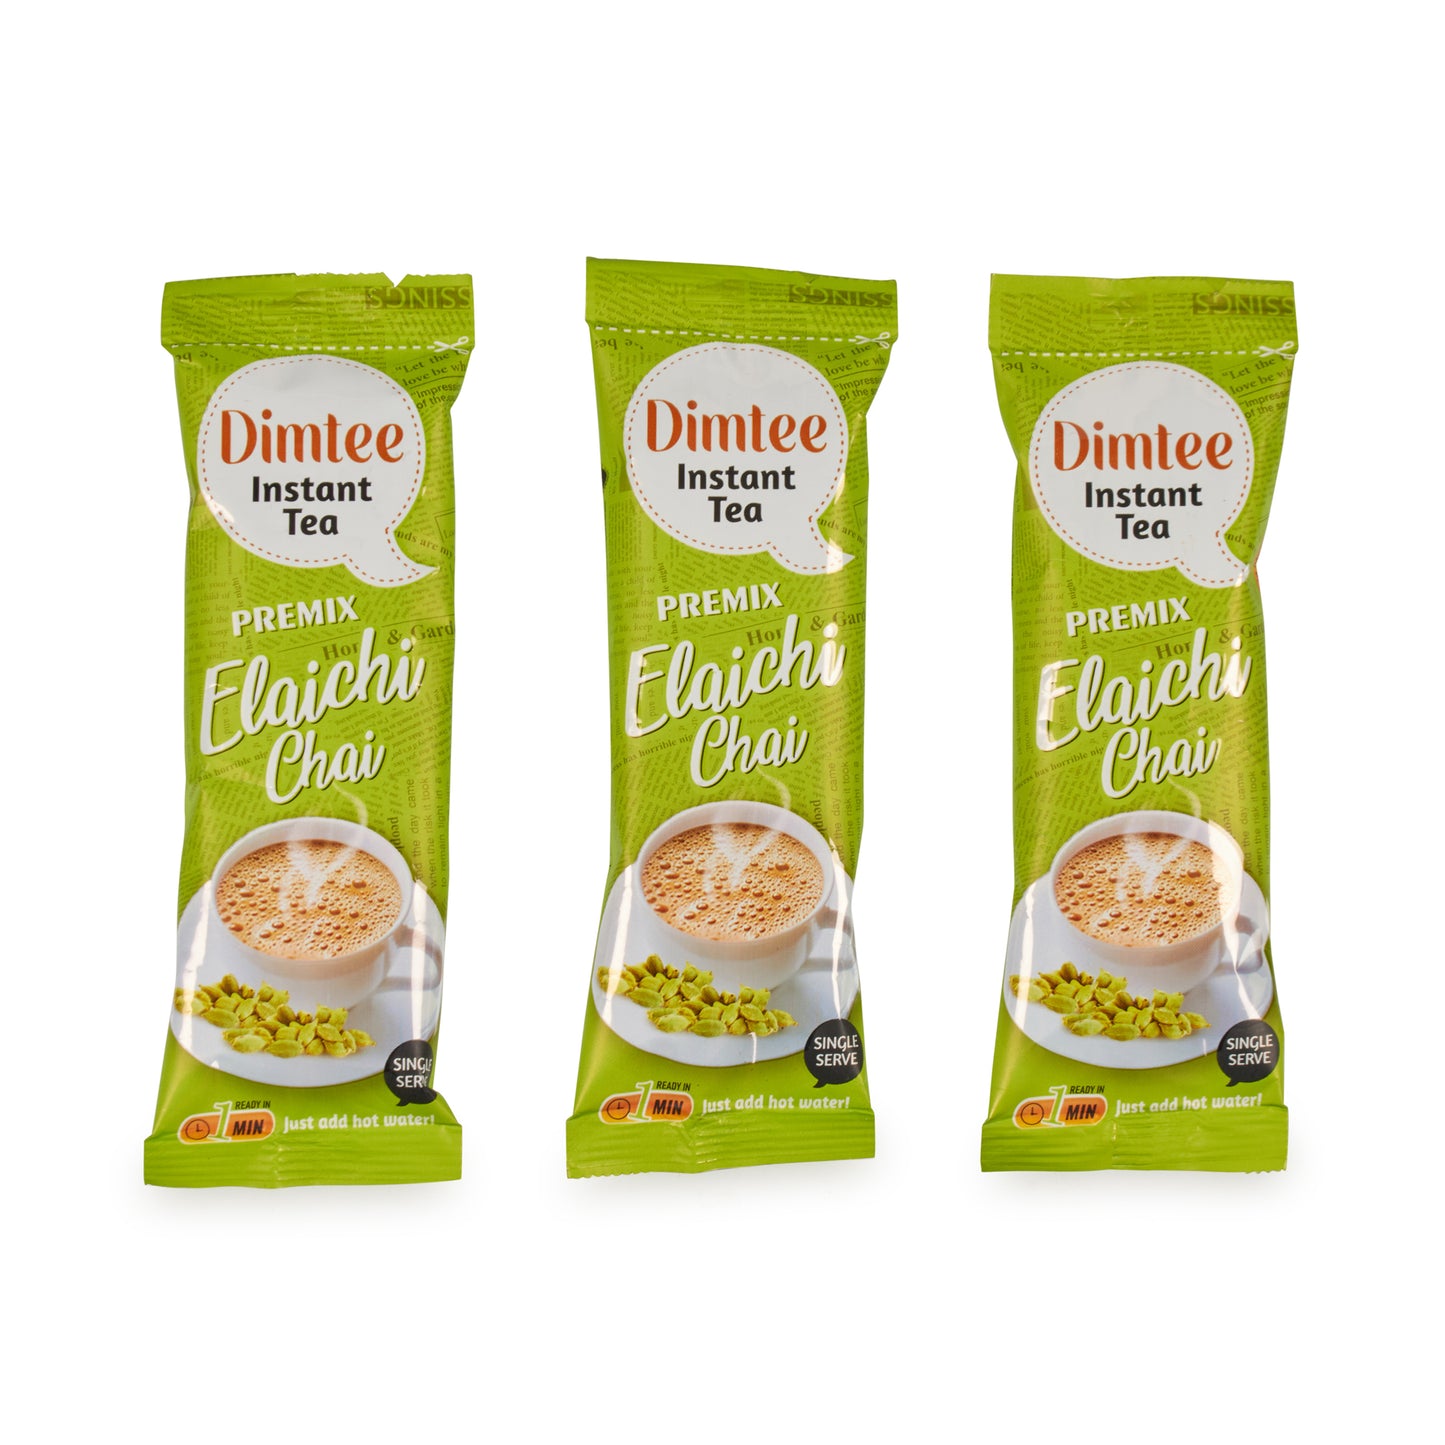 Chaizup Dimtee Tea Authentic Instant Premix Elaichi Tea - 30 sachets, 12.5 gm each